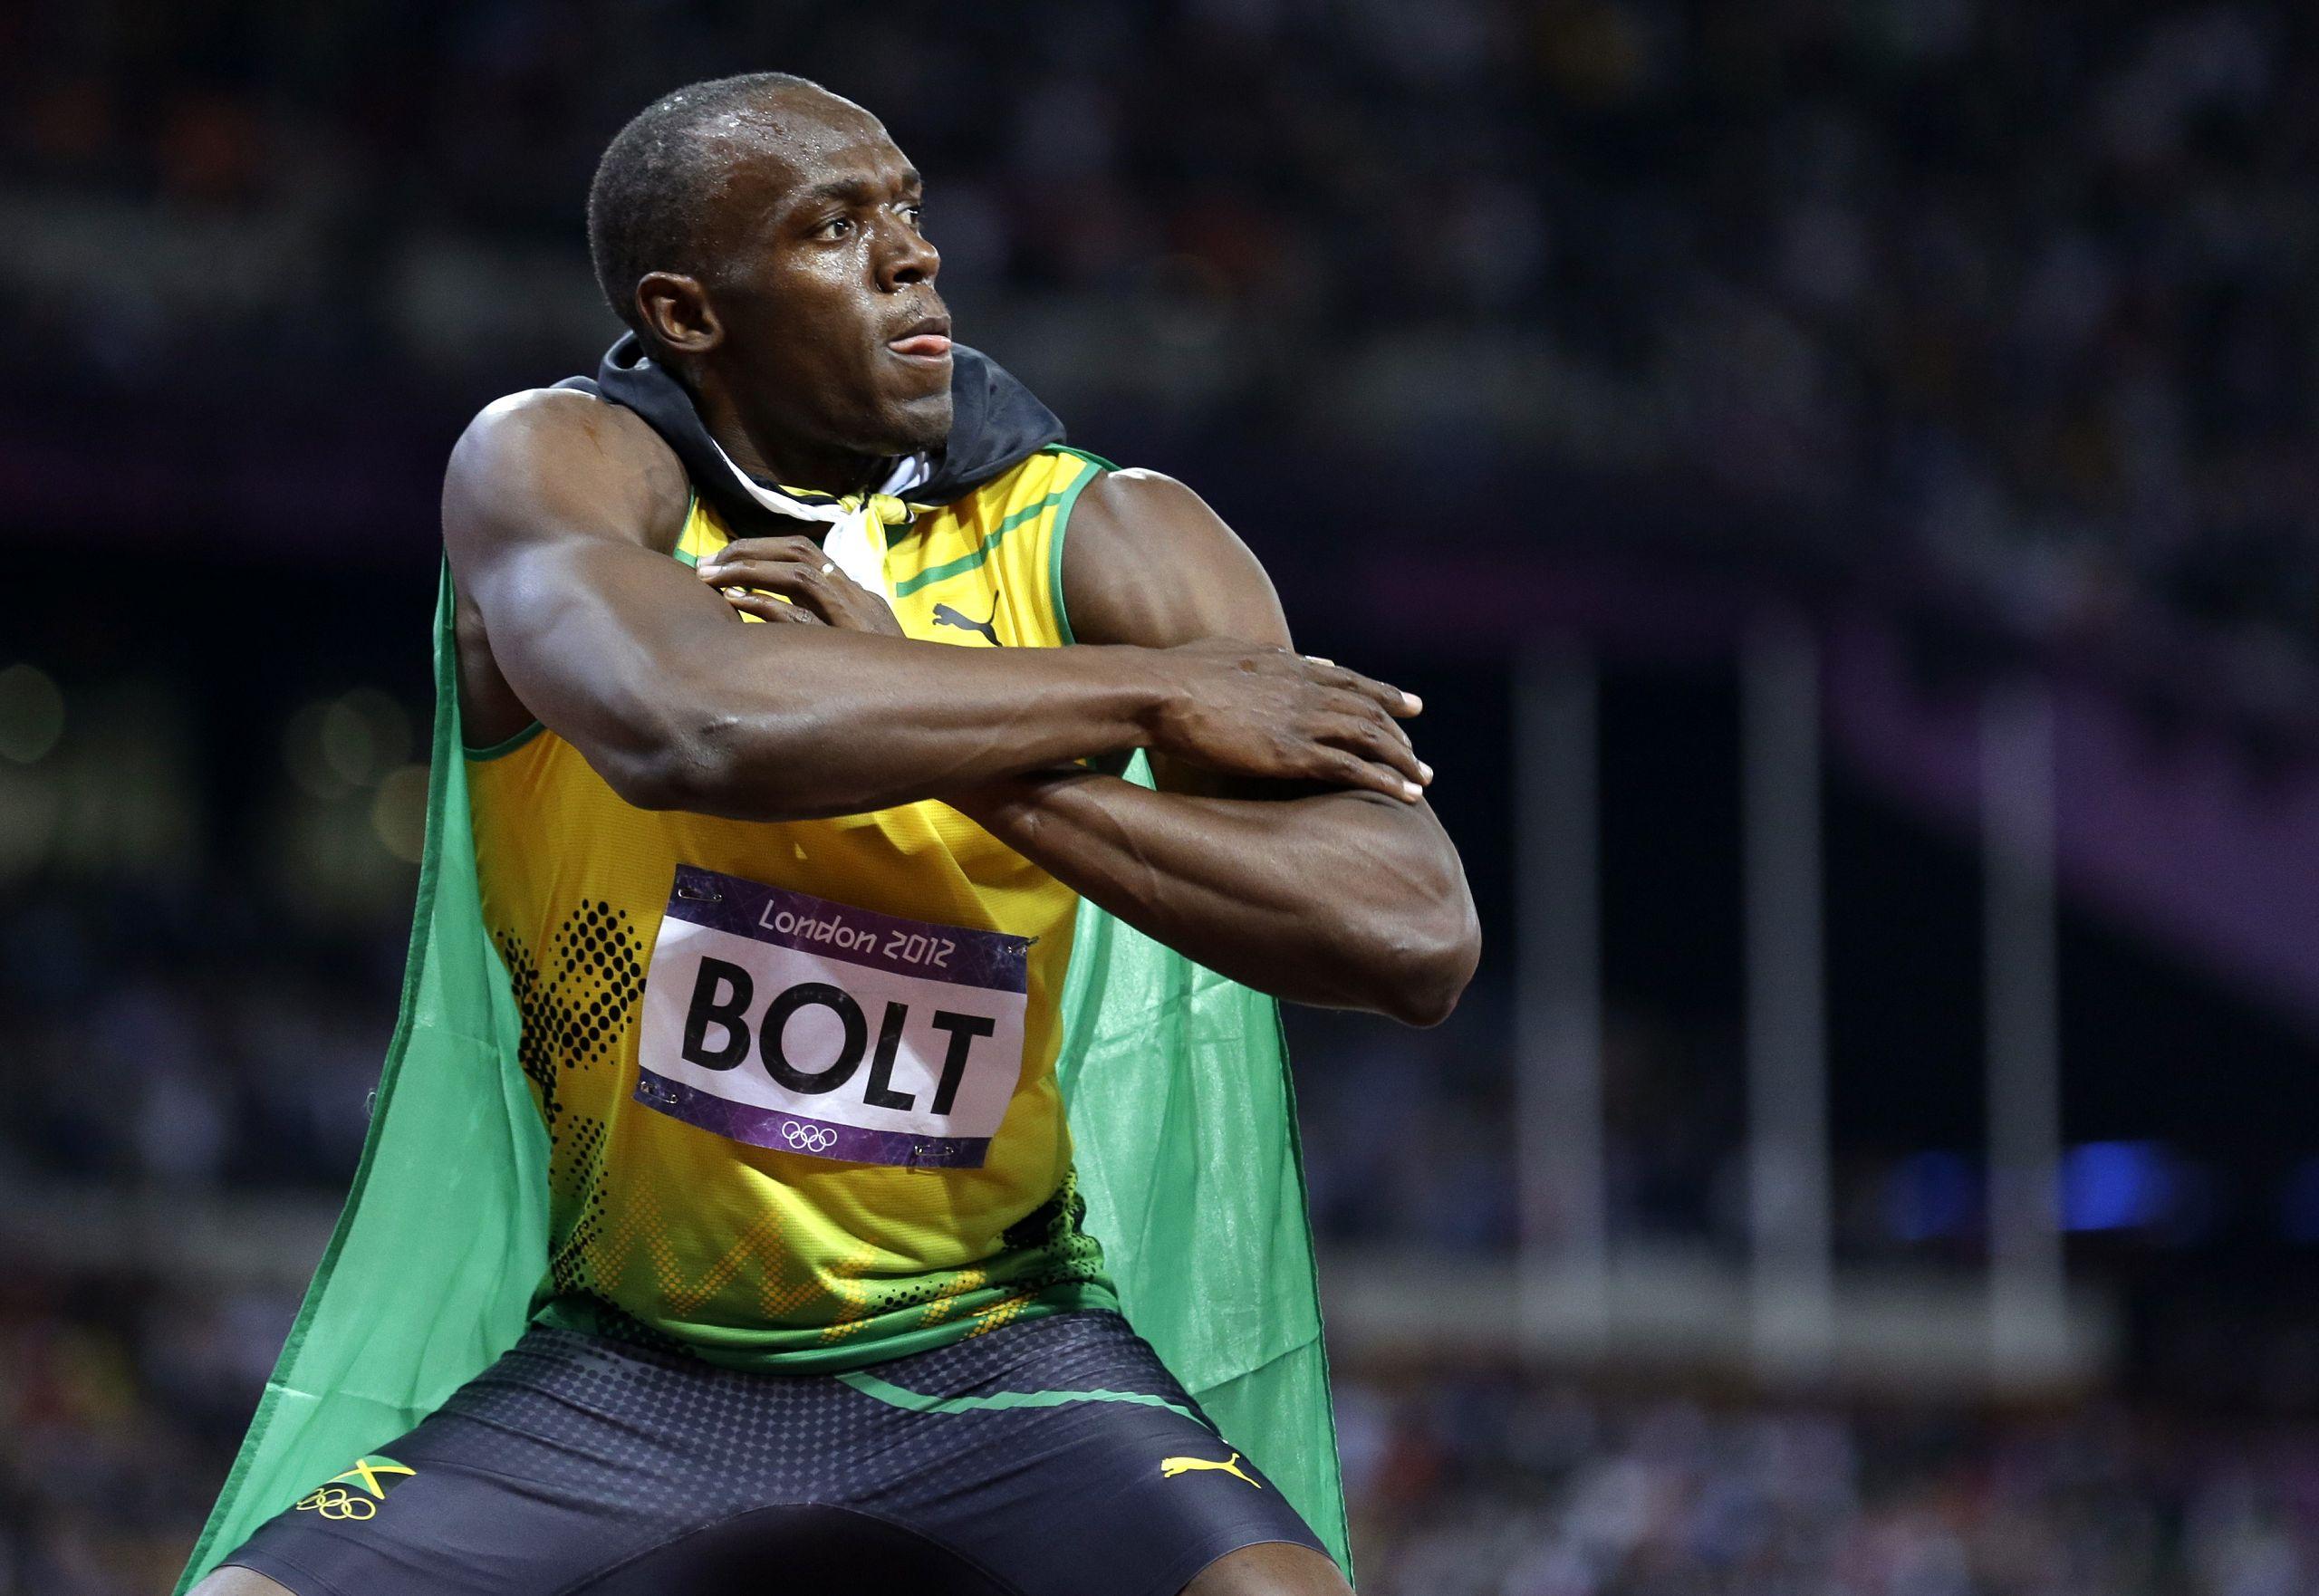 Usain Bolt Sprint Jamaica London 2012 Olympics